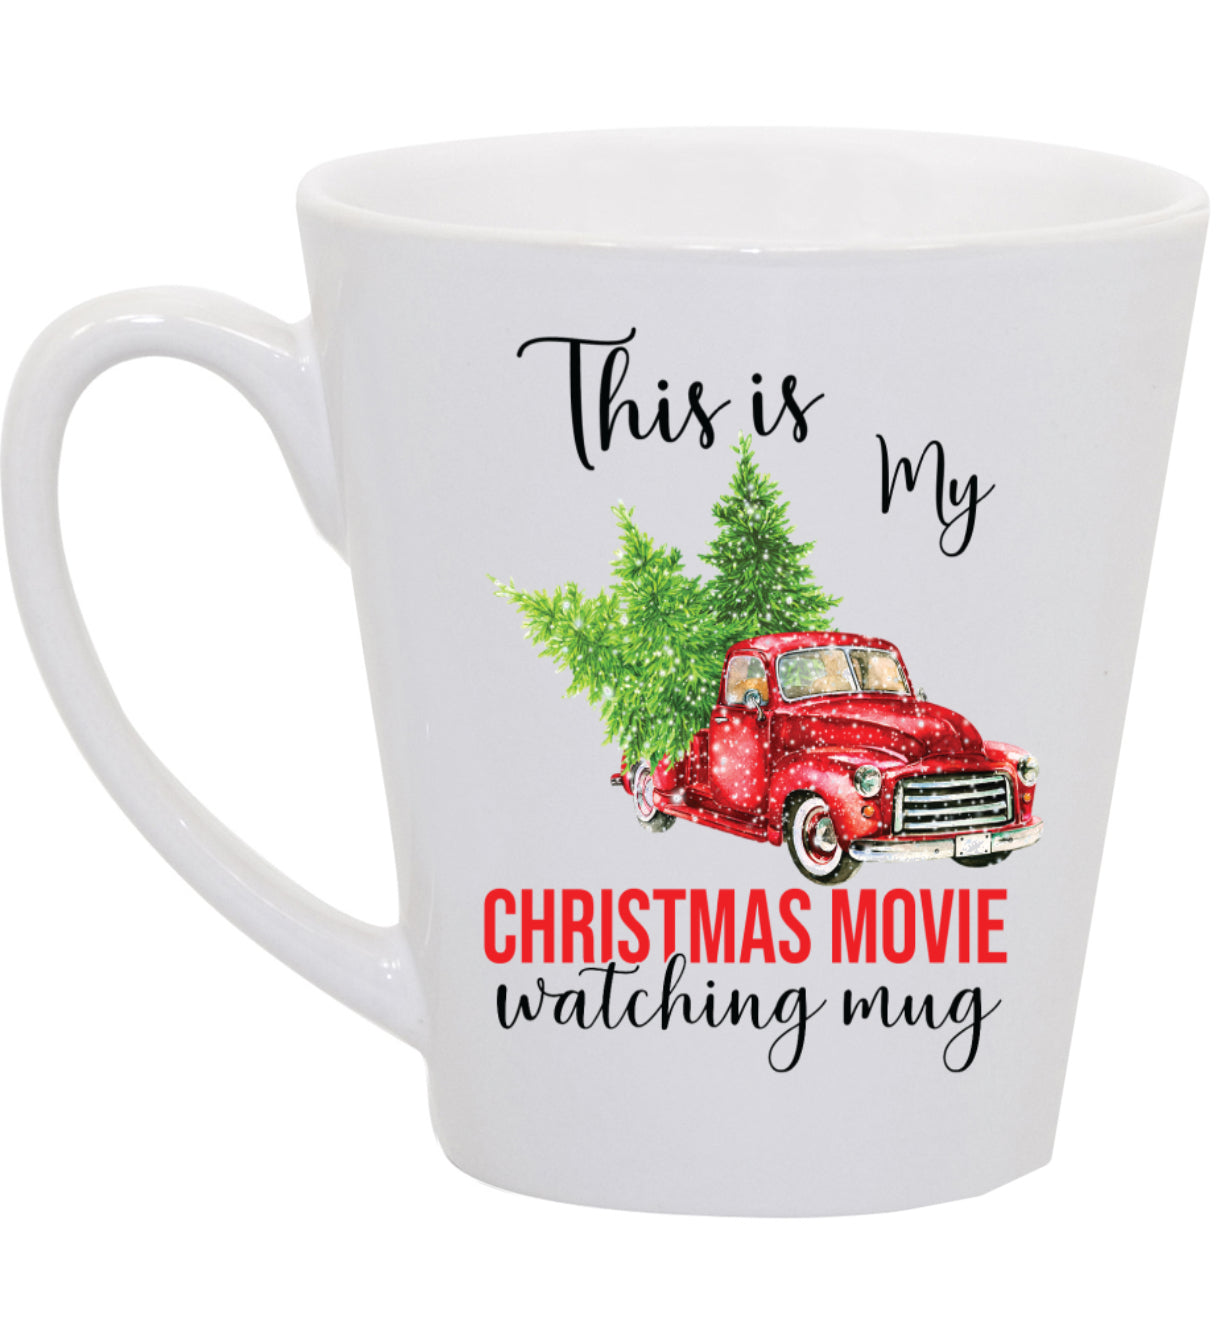 Christmas Movie Watching Coffee Mug with Truck, 11oz, 15oz, 20oz, Black Ringer Coffee Mug 11oz, Latte 12oz, v2 Ceramic Drinkware